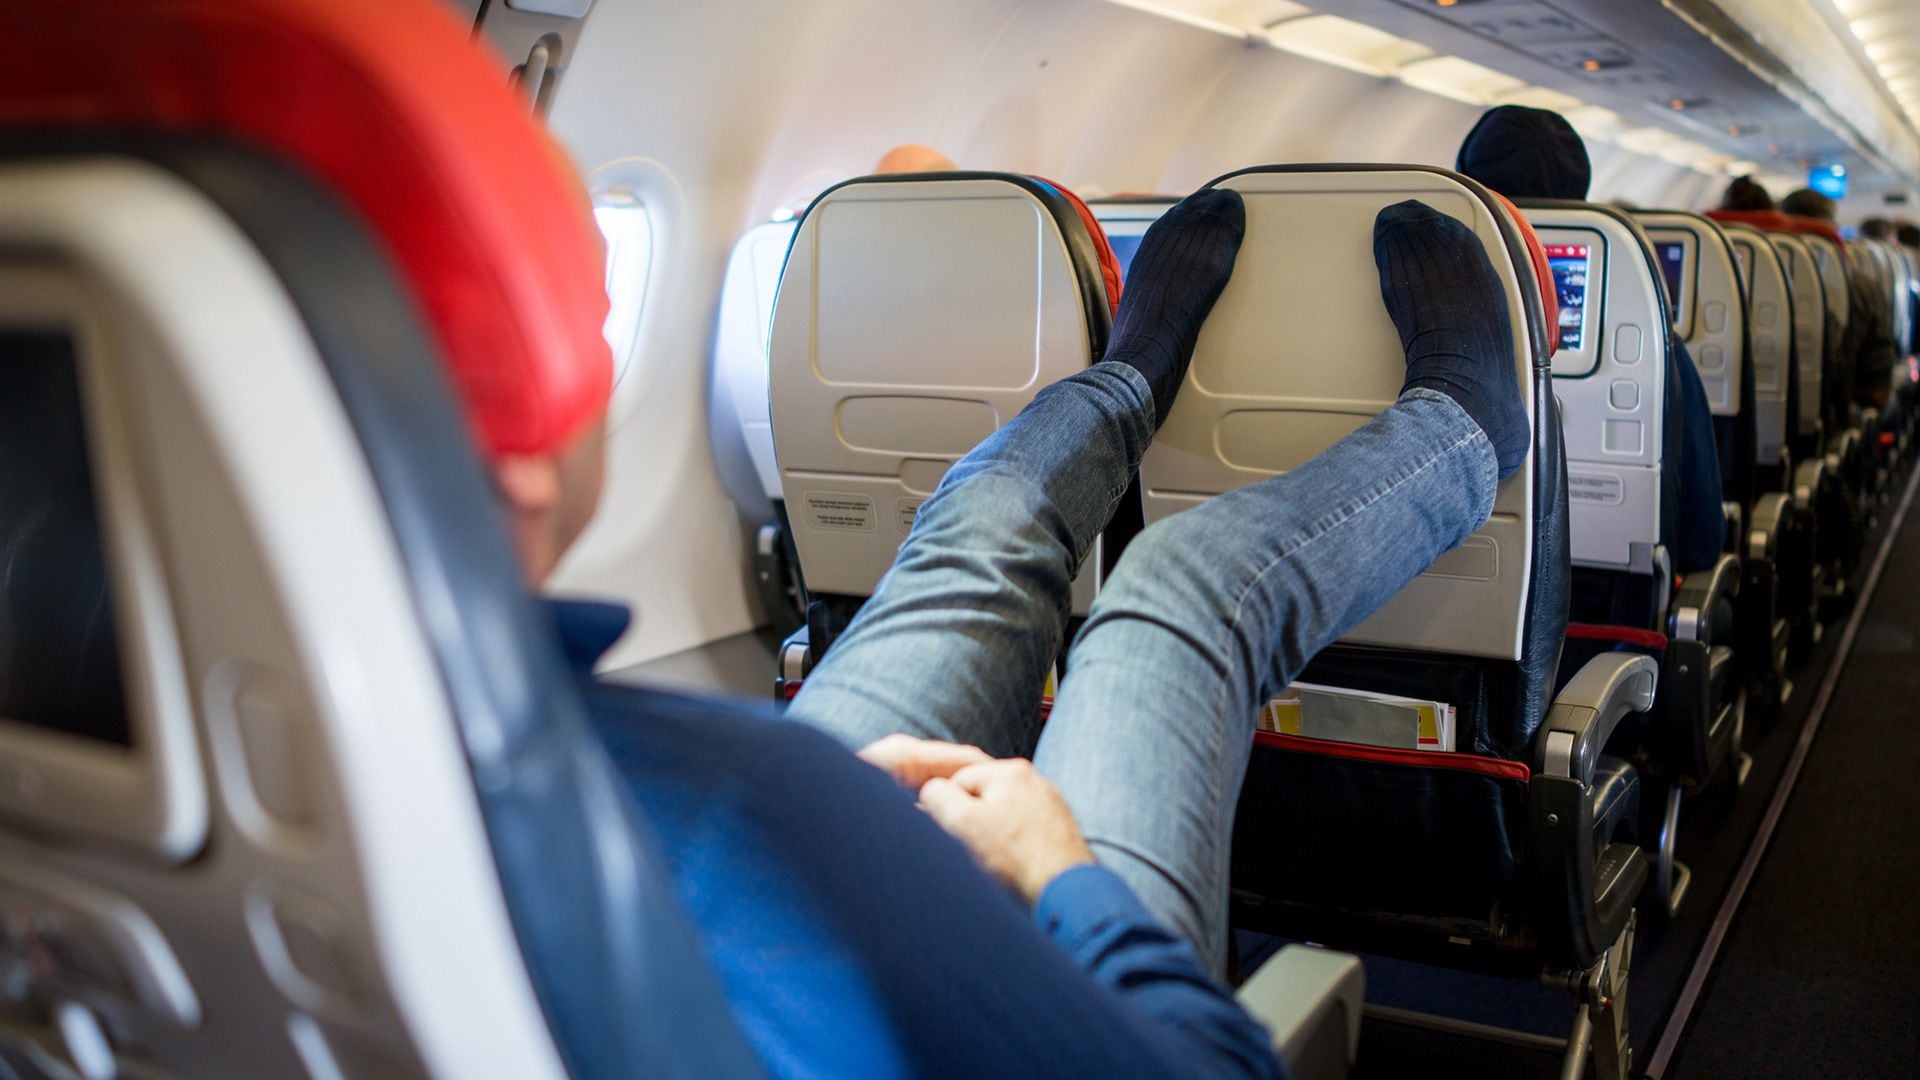 Durante el vuelo de más de 6 a 8 horas, los pasajeros deberían pararse y caminar cada 1 ó 2 horas, usar ropa cómoda, evitar cruzar las piernas,  y evitar los sedantes, hipnóticos y el alcohol, que pueden hacer que nos movamos menos